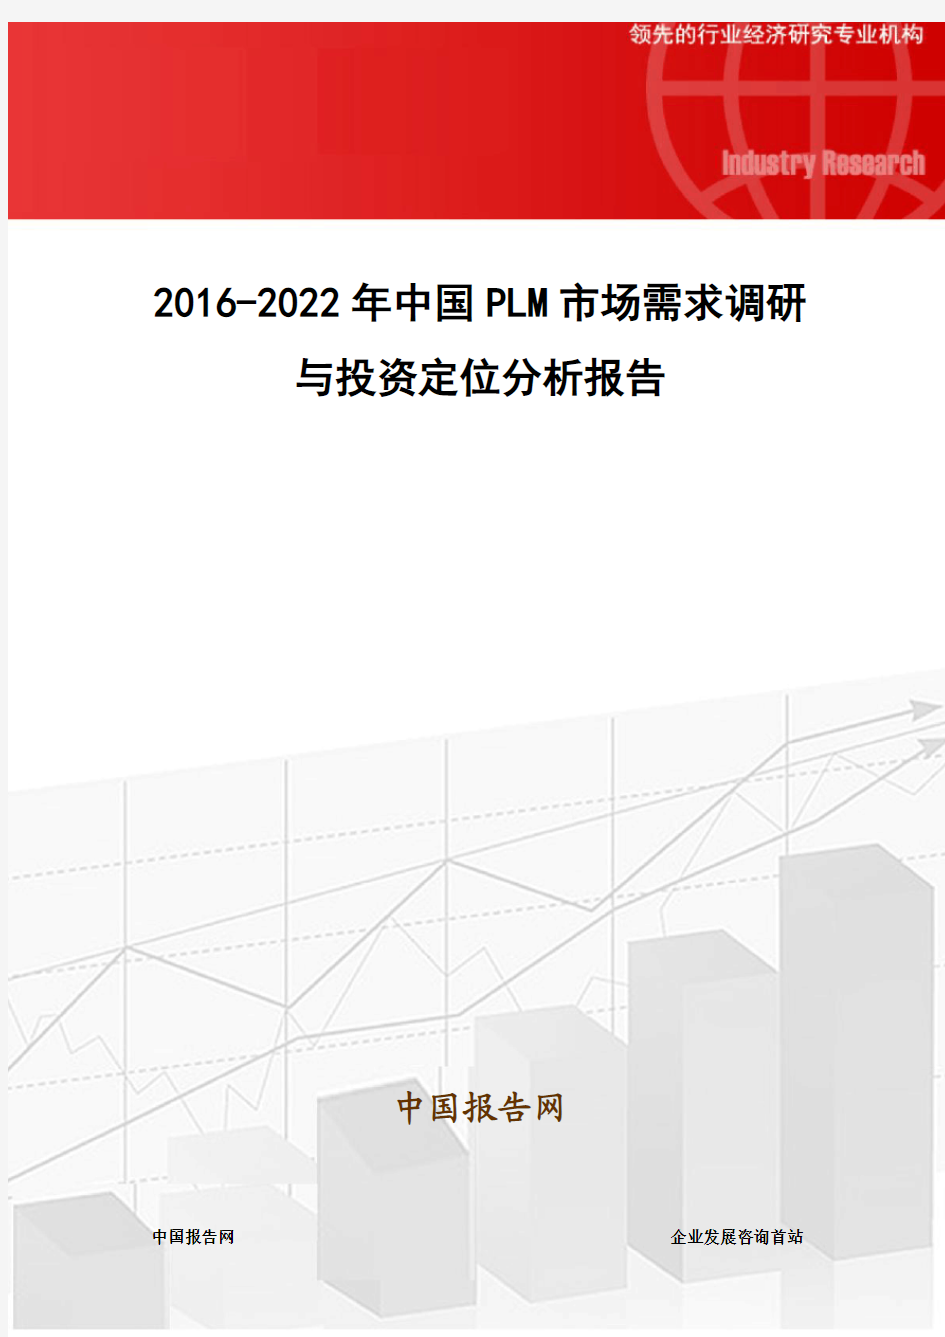 2016-2022年中国PLM市场需求调研与投资定位分析报告